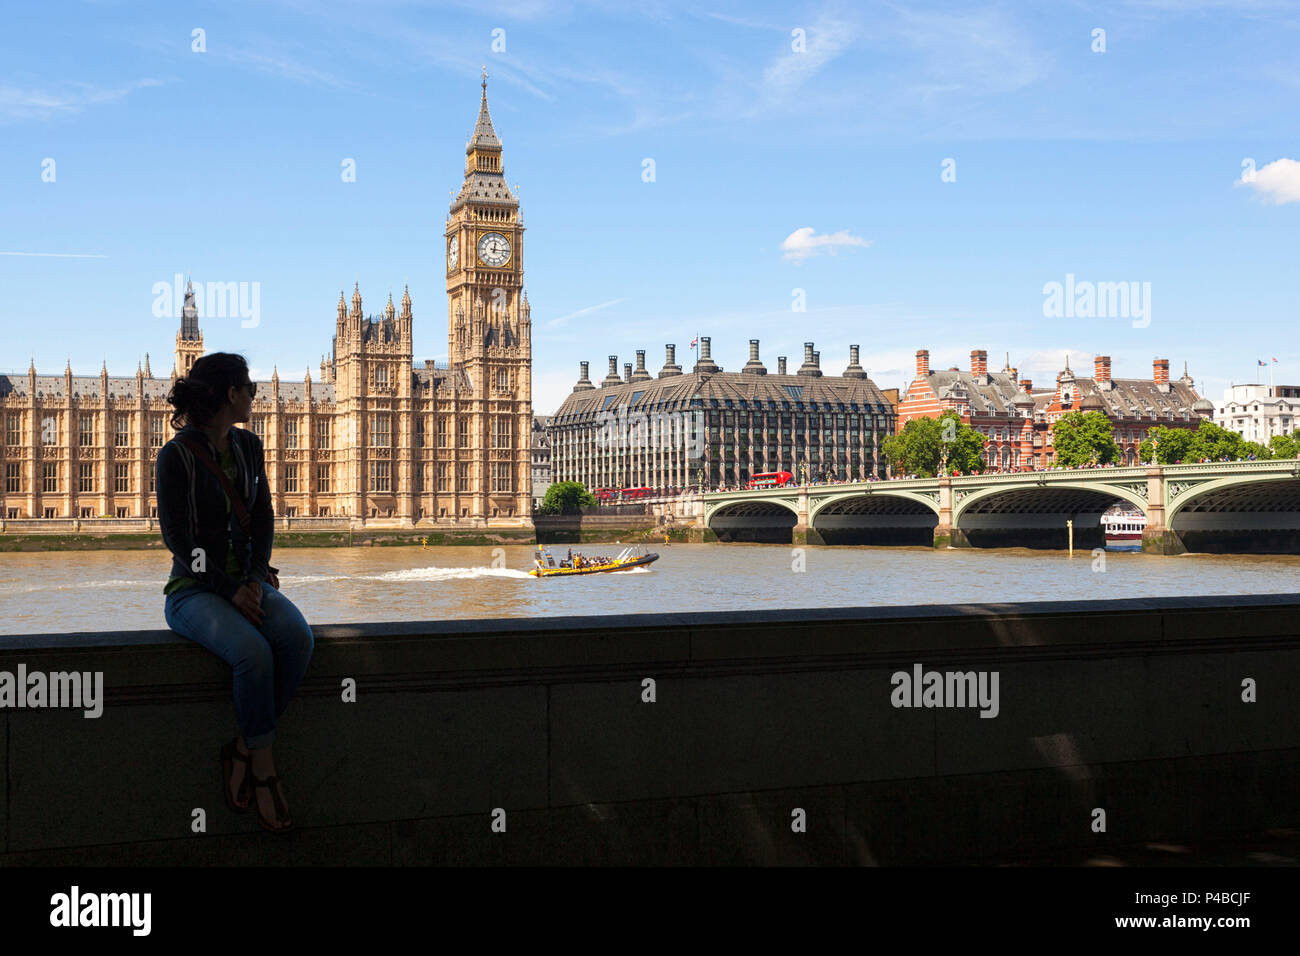 Un touriste en face du Palais de Westminster, Westminster, Londres, Grande-Bretagne, Royaume-Uni Banque D'Images